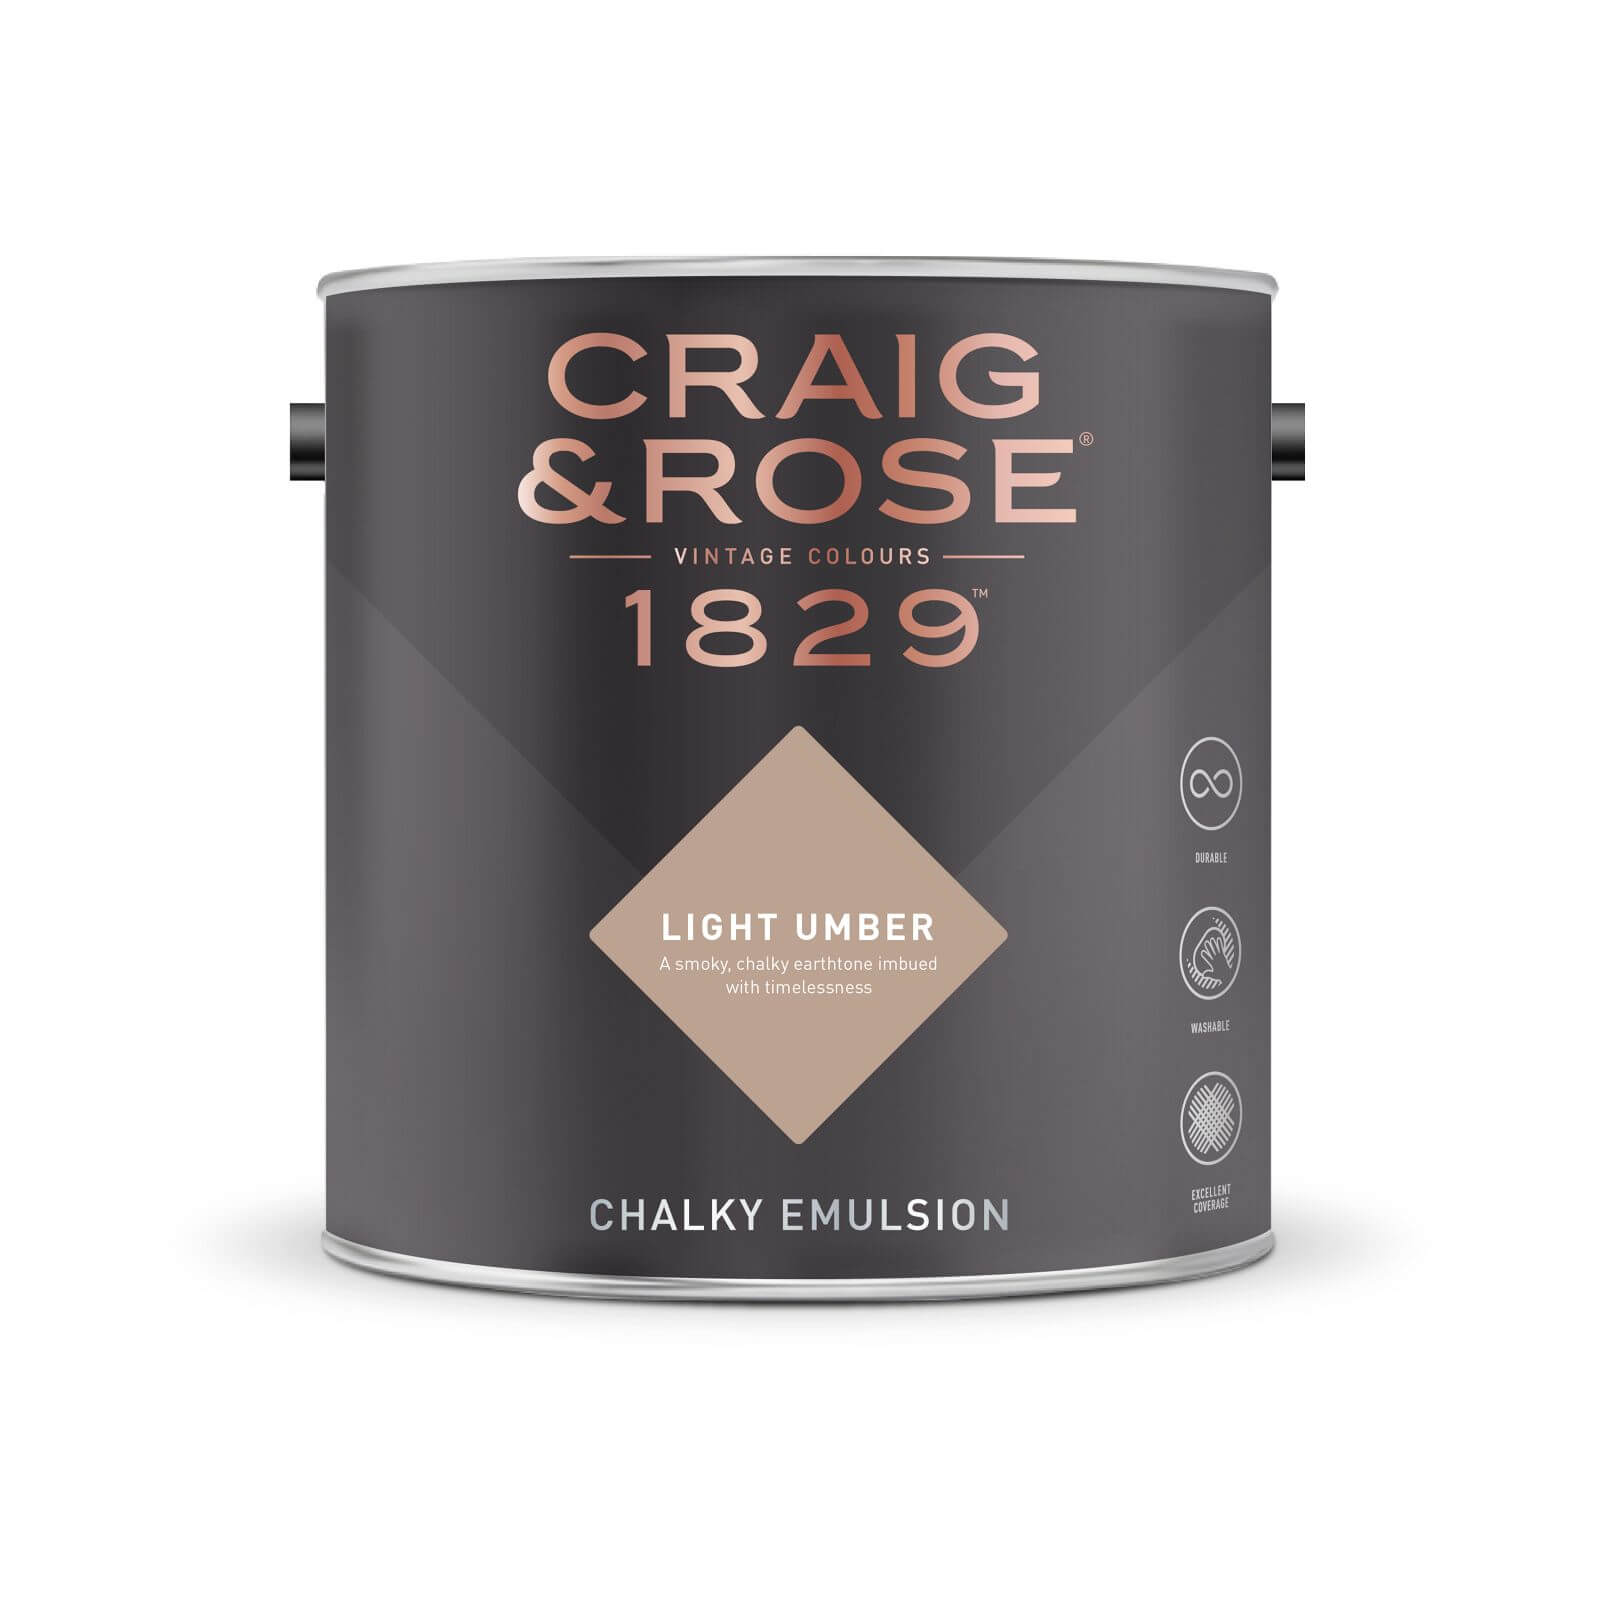 Craig & Rose 1829 Chalky Emulsion Paint Light Umber - Tester 50ml